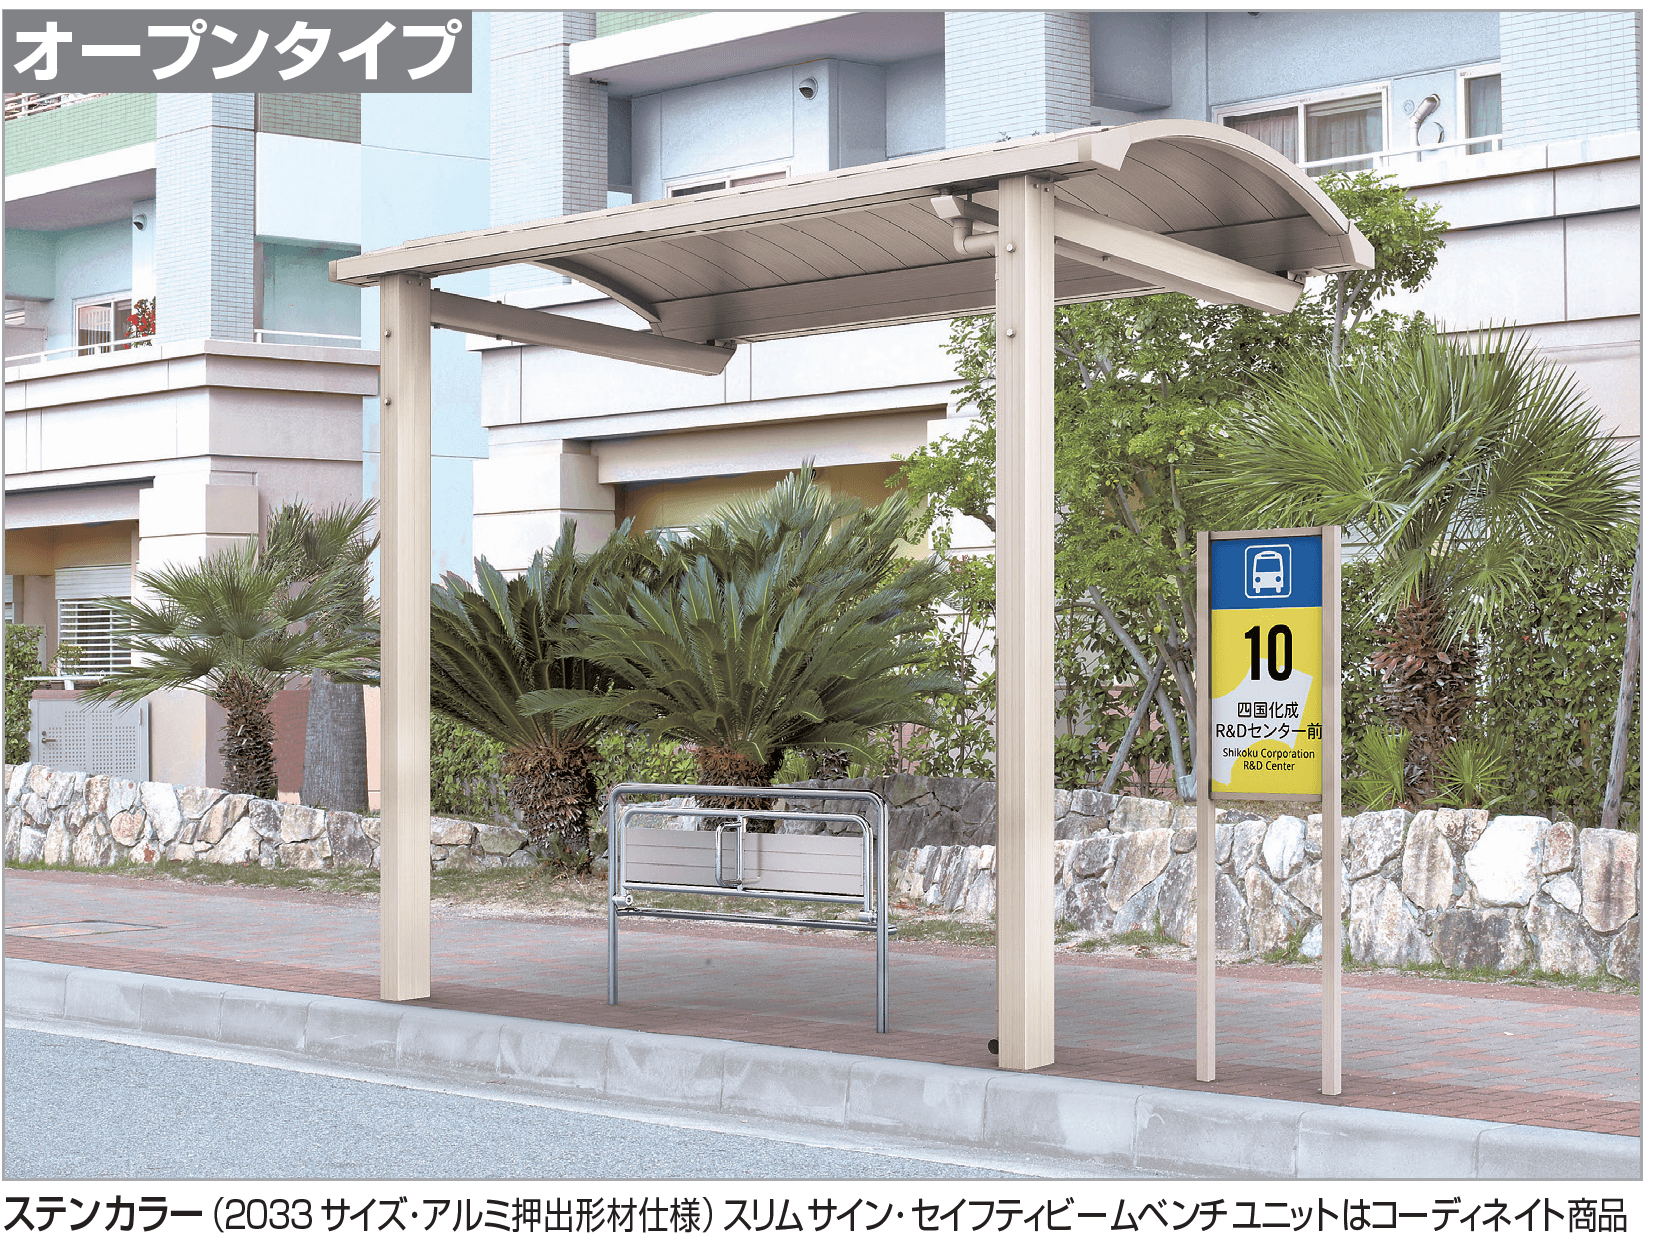 ソリッドルーフA バス停タイプ(オープンタイプ)【2023年版】1